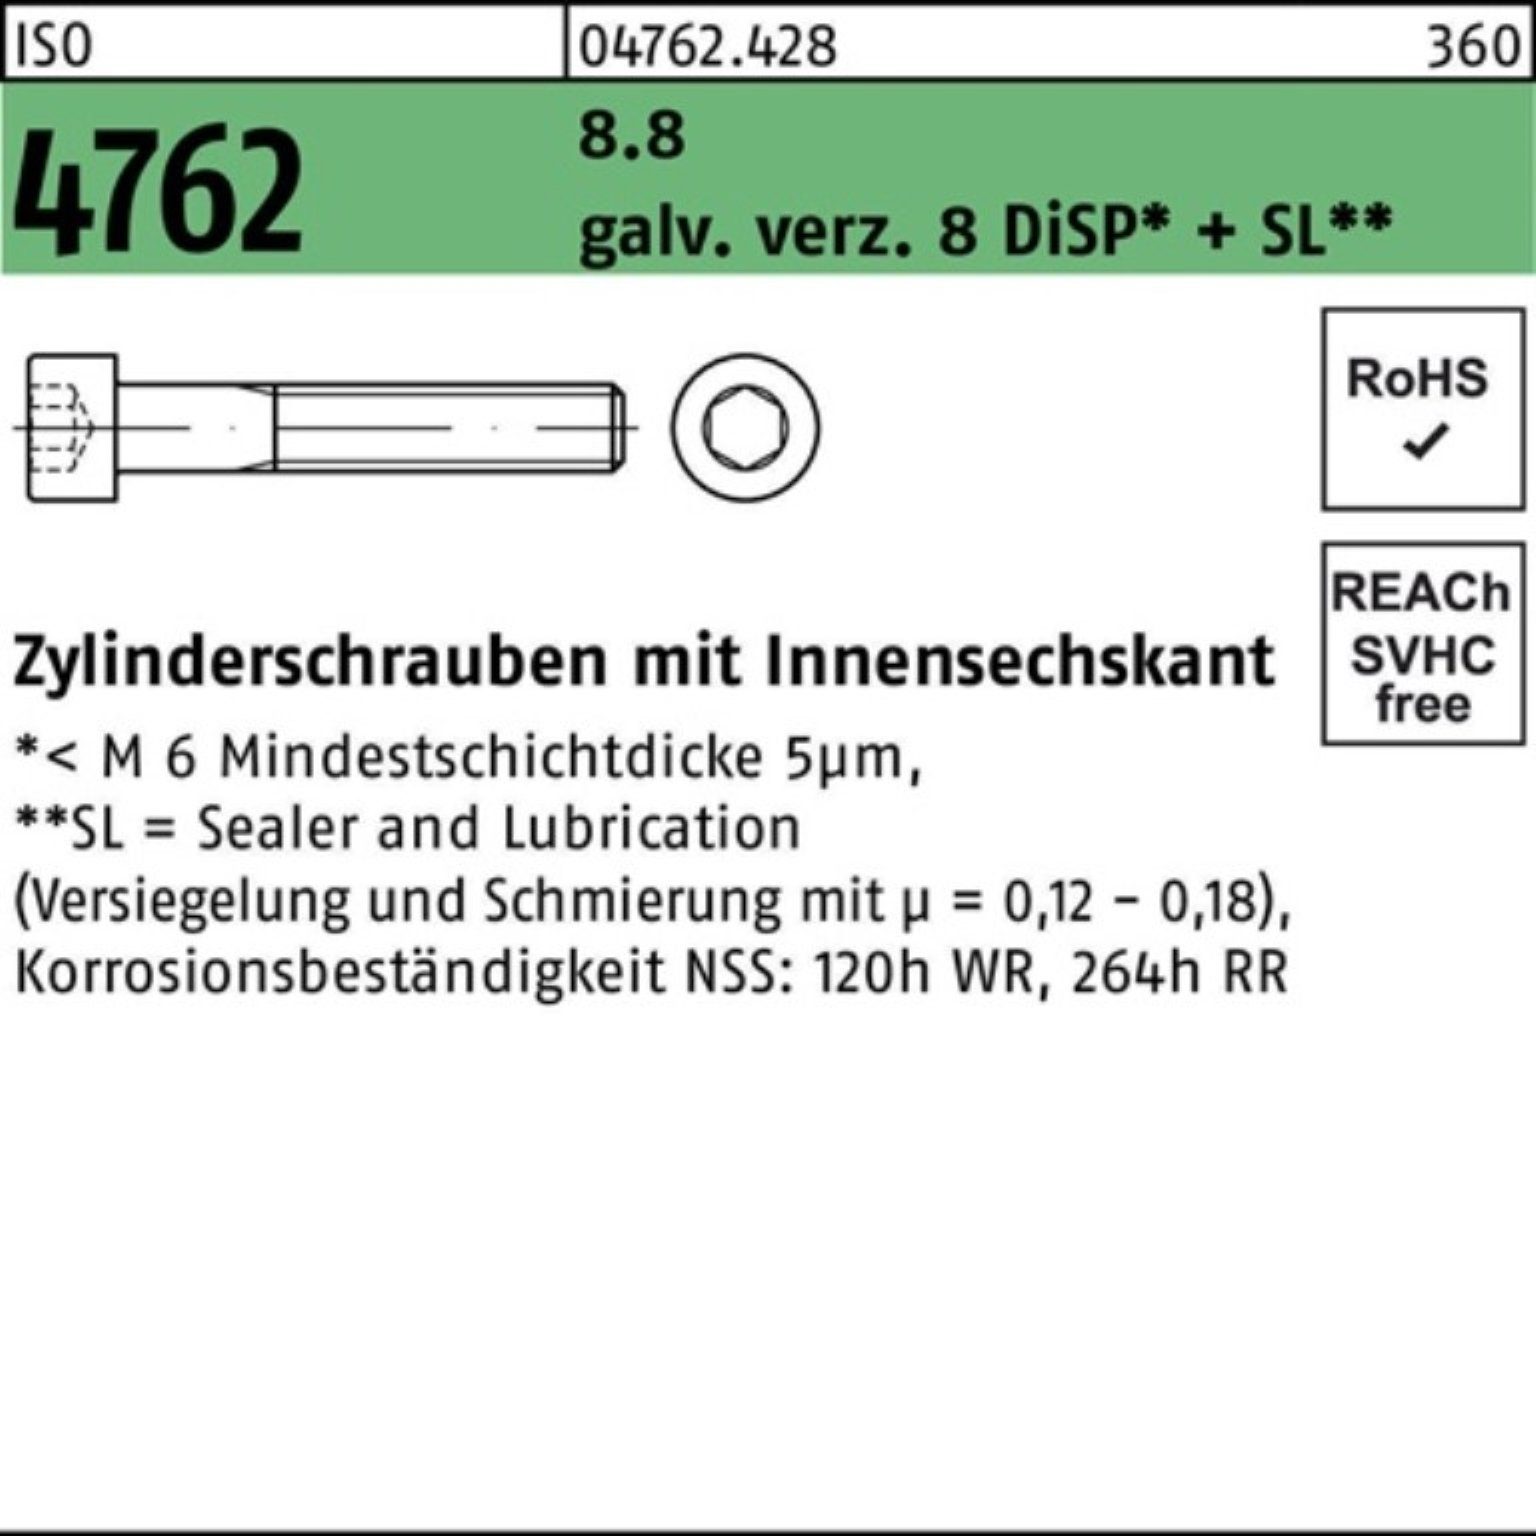 Reyher Zylinderschraube 100er 4762 ISO 8.8 galv.verz. M10x55 Pack Innen-6kt 8 Zylinderschraube